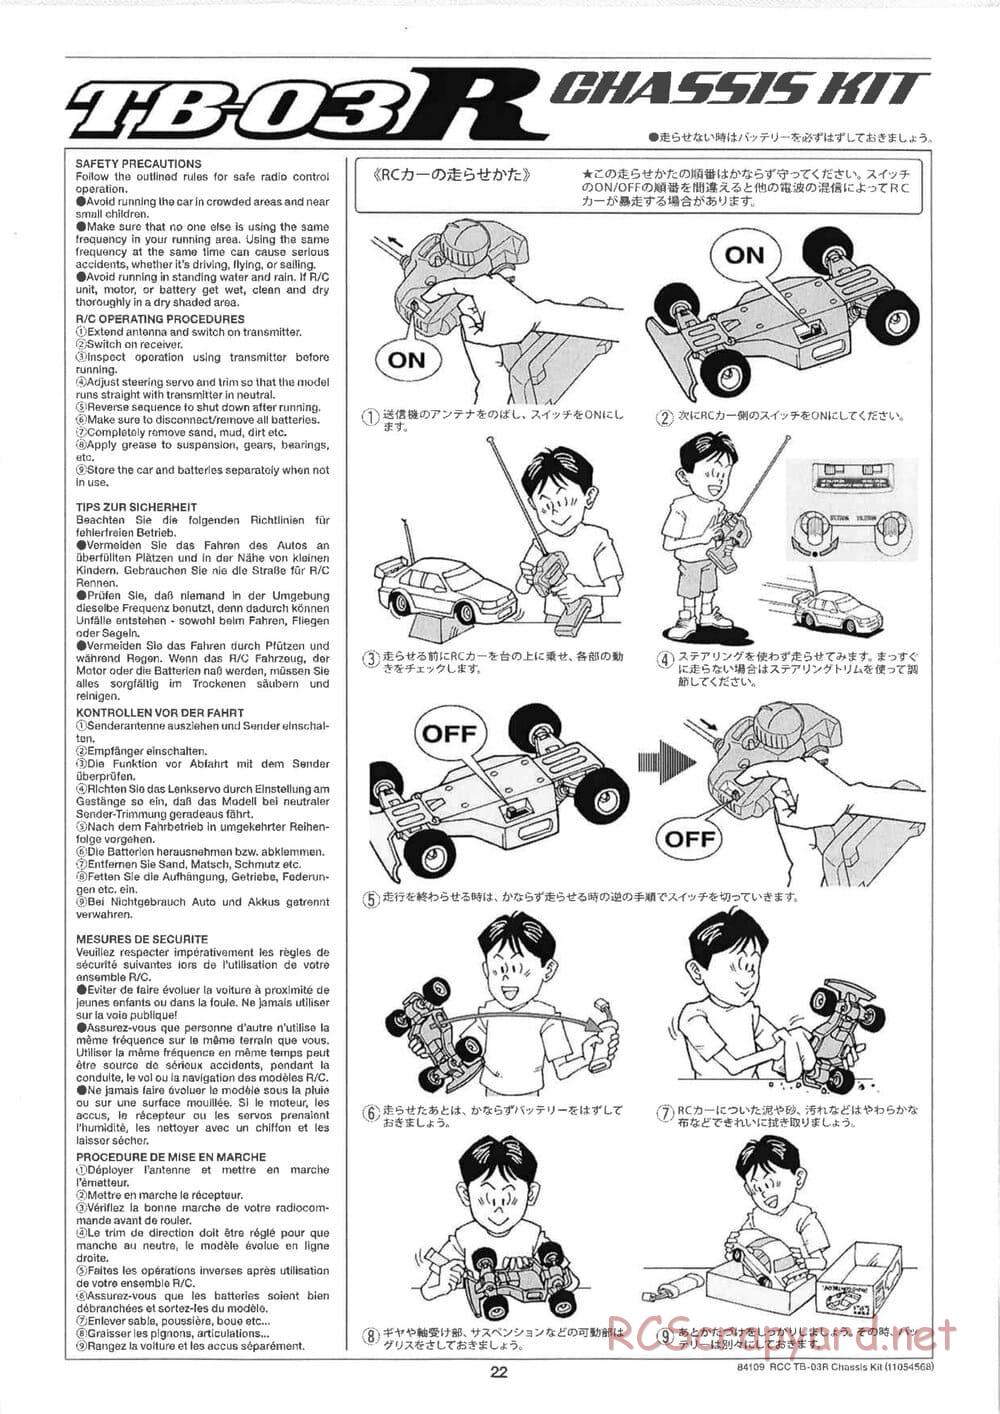 Tamiya - TB-03R Chassis - Manual - Page 22